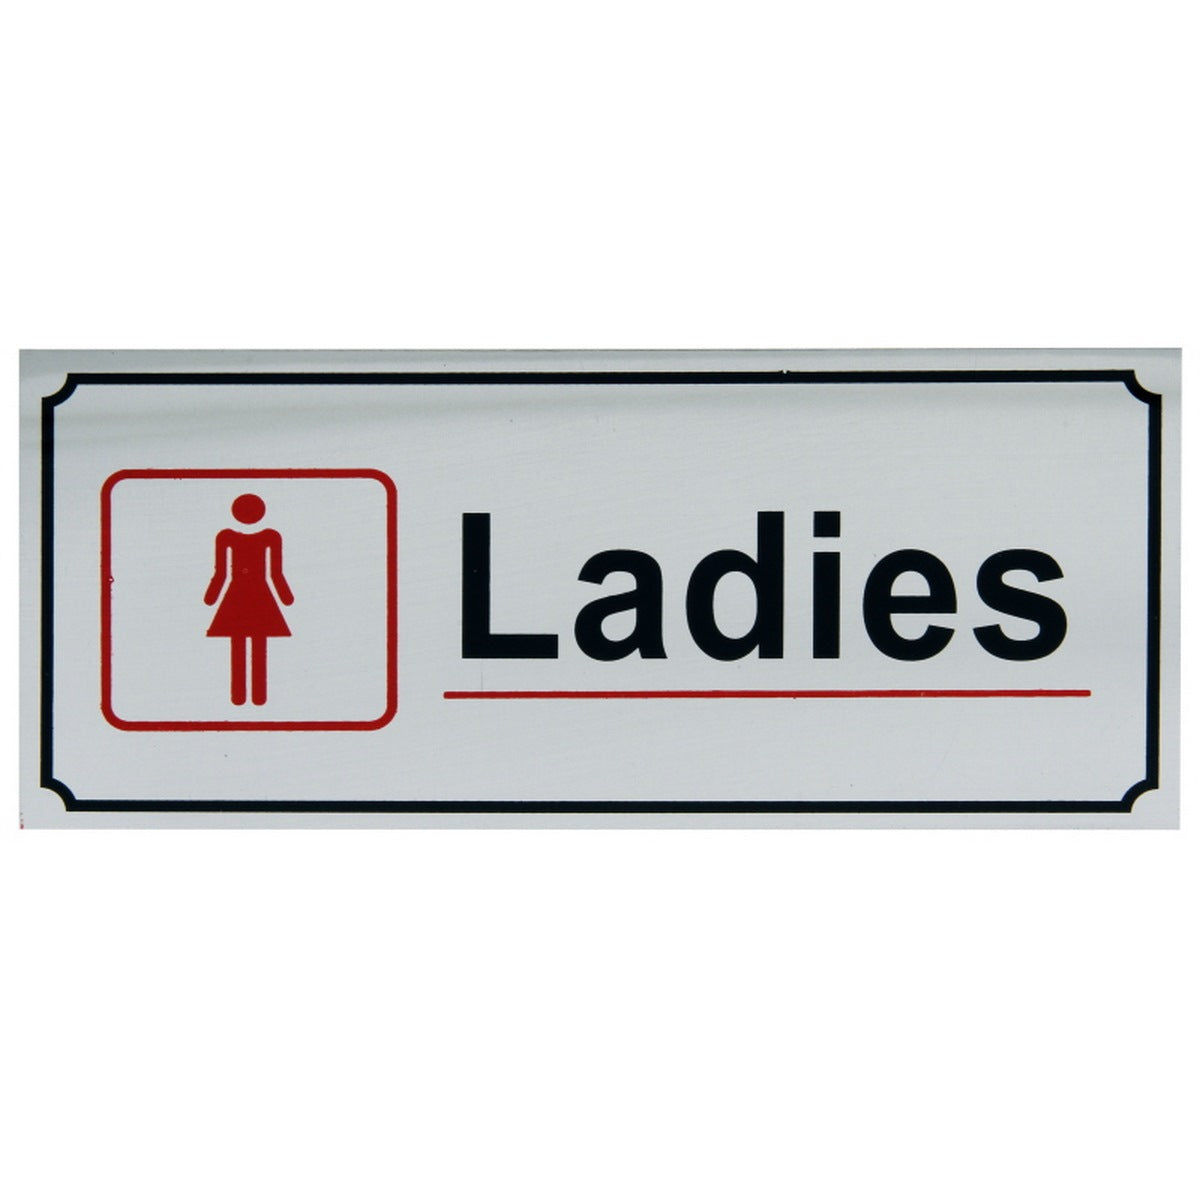 Ladies Queens Toilet Resstroom Wc Sign Stock Illustration 2311316403 |  Shutterstock